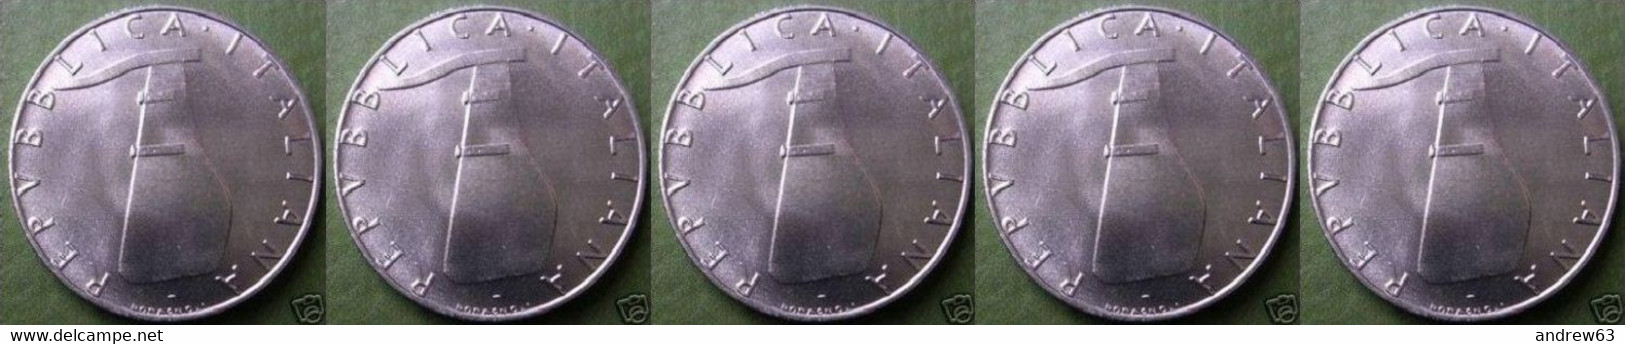 ITALIA - Lire 5 1971 - FDC/Unc Da Rotolino/from Roll 5 Monete/5 Coins - 5 Lire